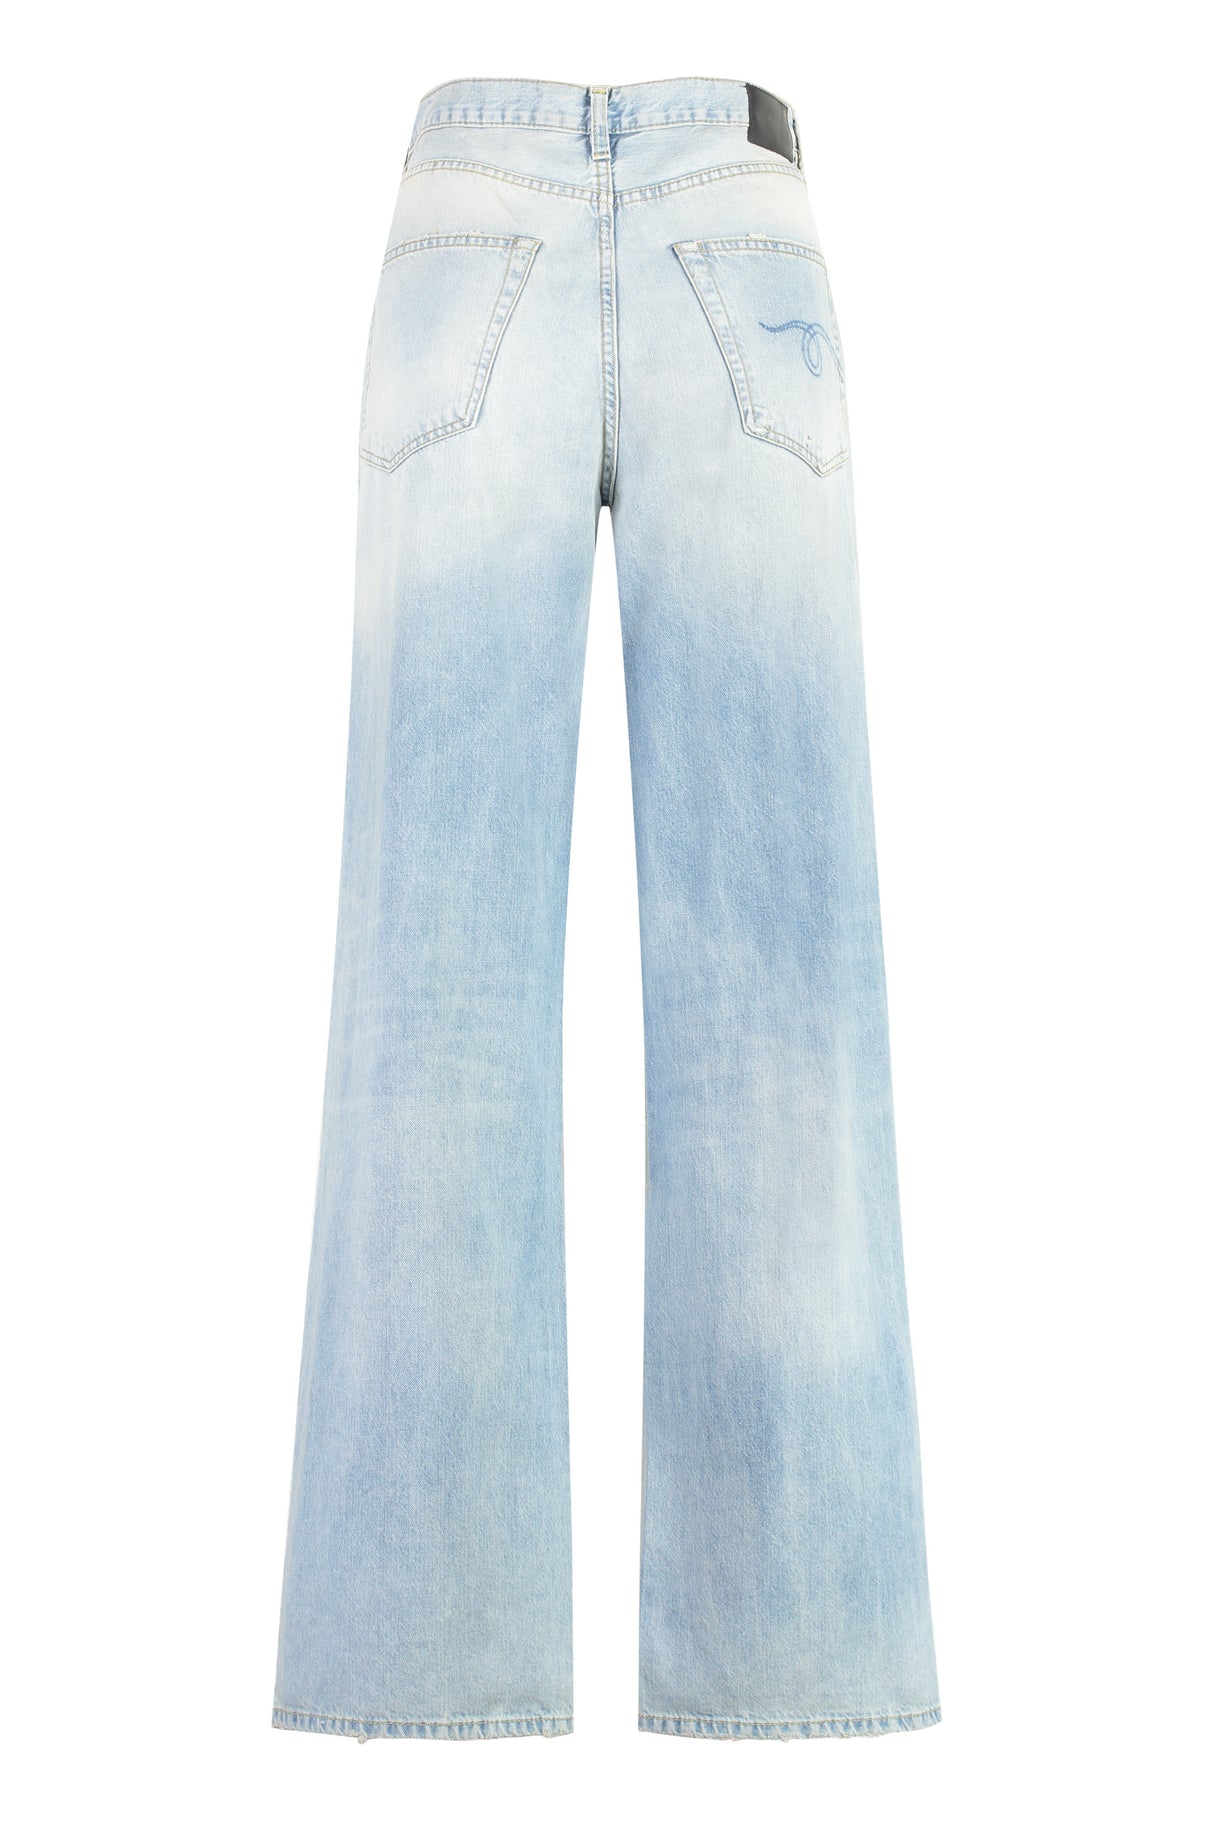 Quần Jeans Wide-Leg Vải Jean cho Nữ với Kẹp Đồng Màu Đồng và Sọc Đối Lập